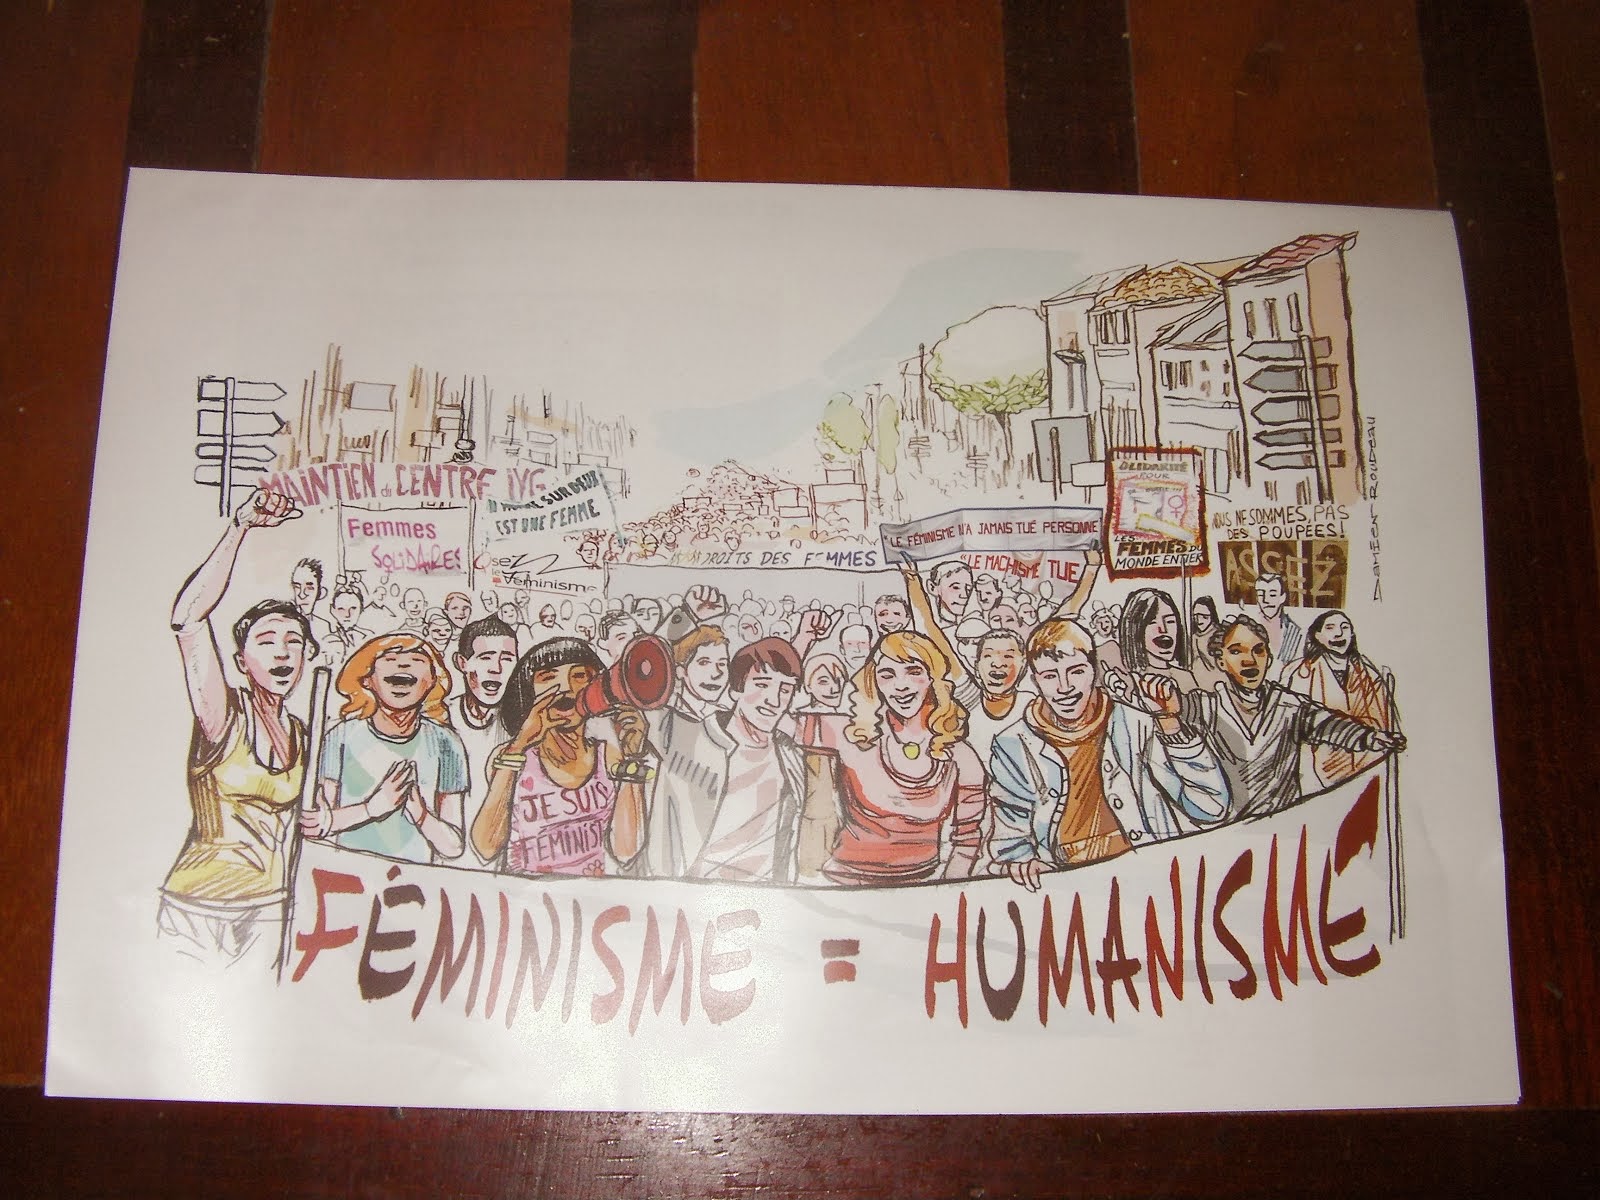 FEMINISMO = HUMANISMO